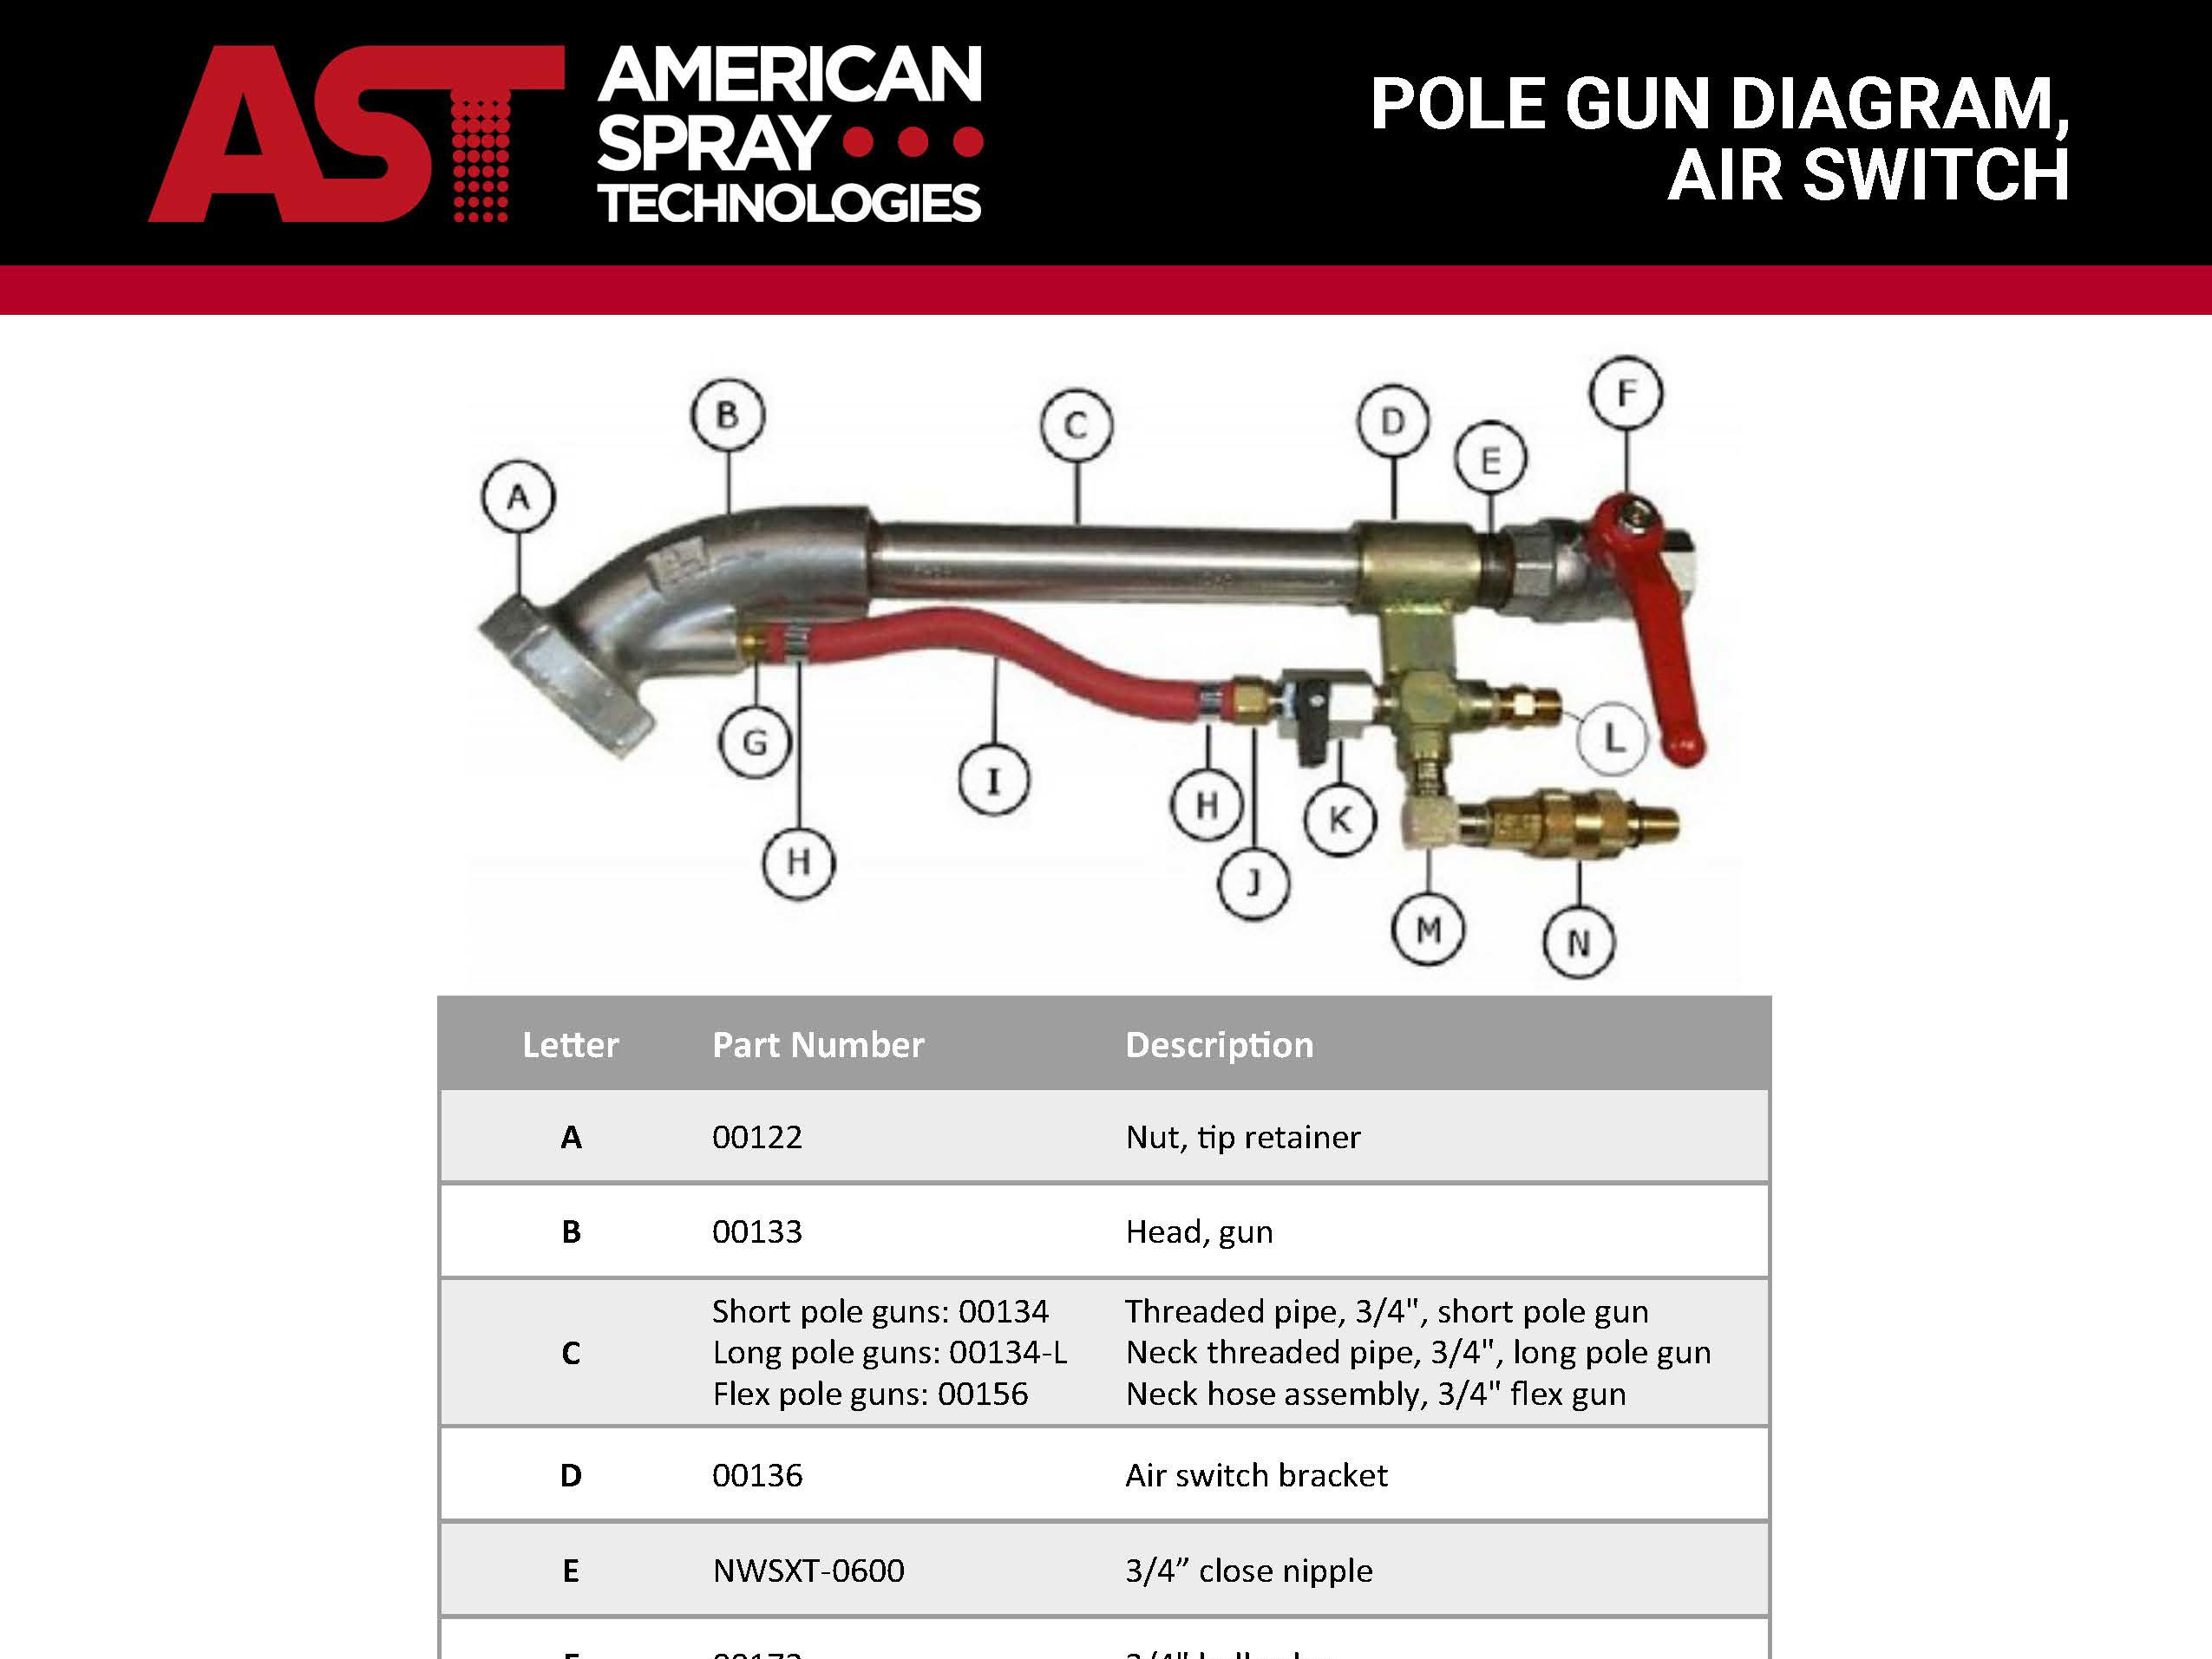 Air Switch Pole Gun Diagram